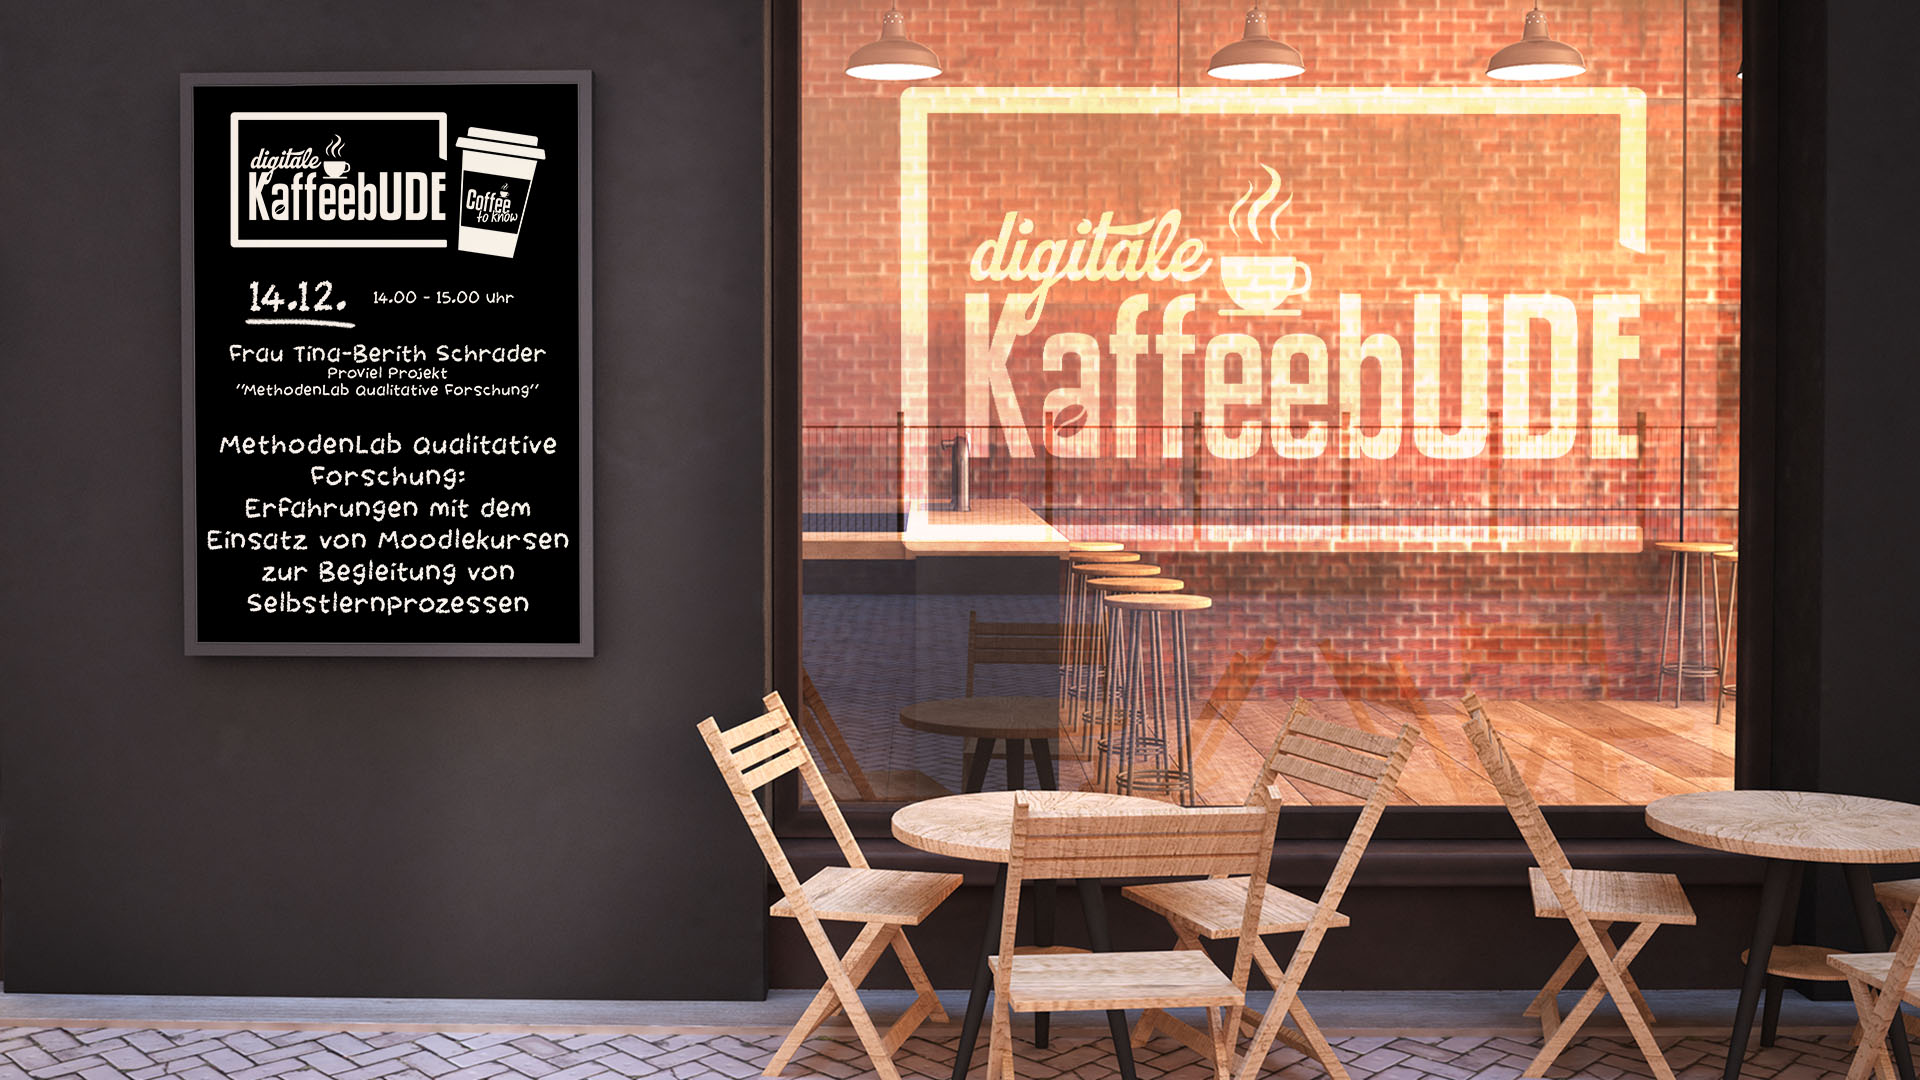 Digitale KaffeebUDE_Innenansicht_Café